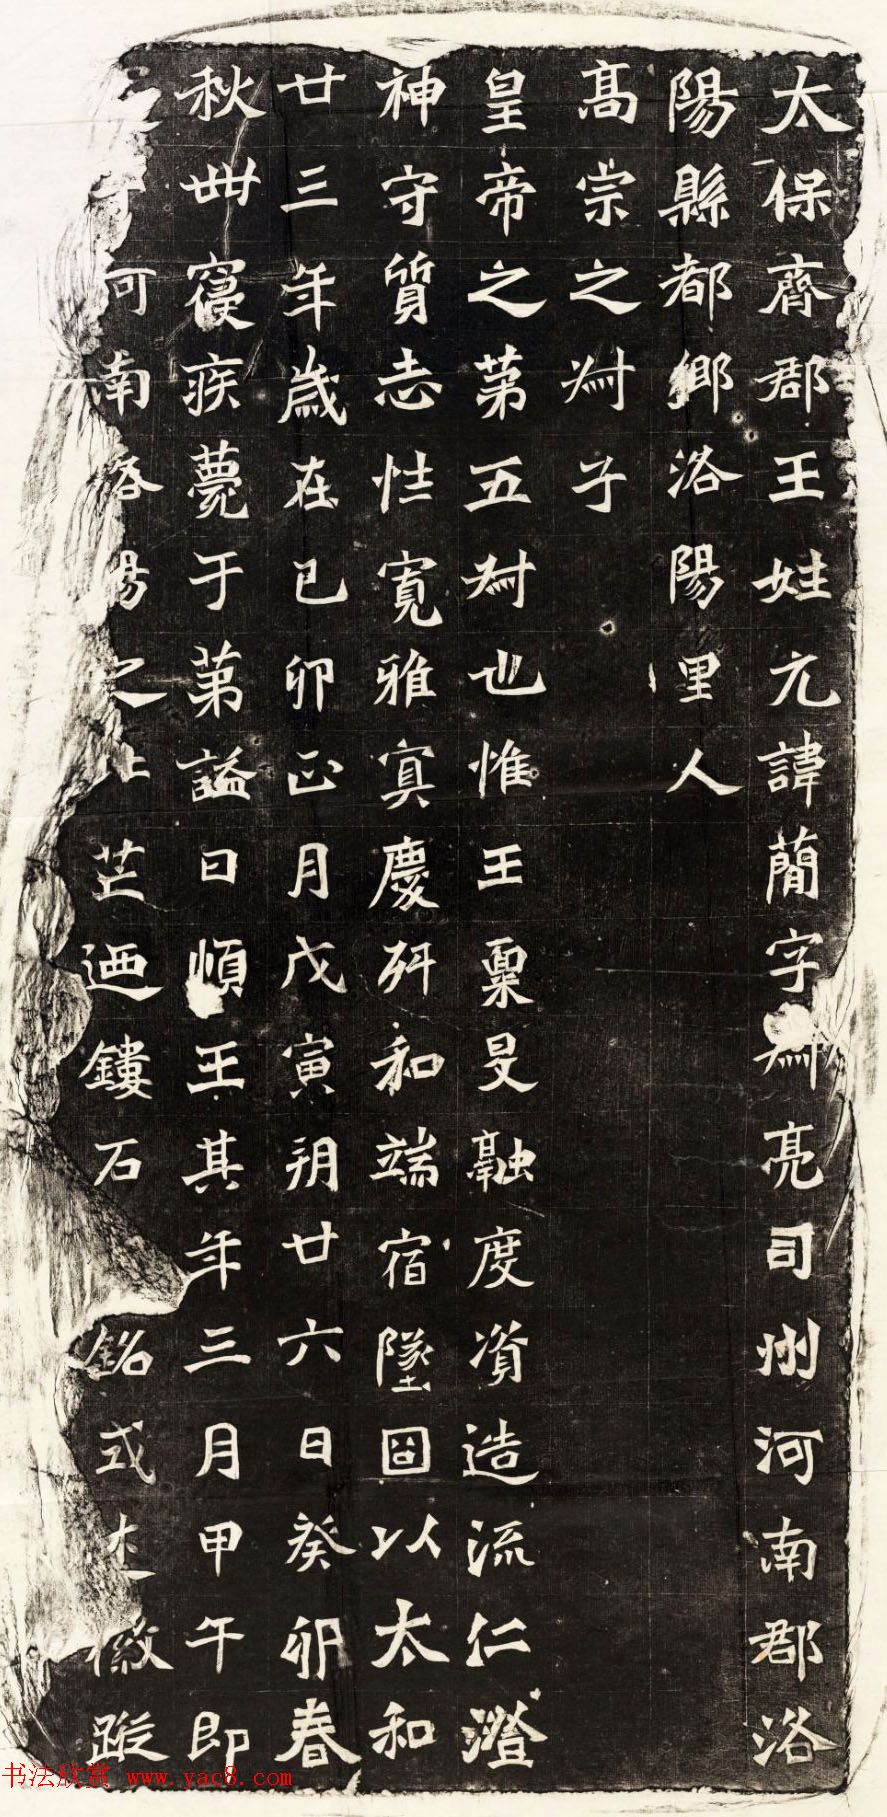 北魏书法石刻欣赏《元简墓志》高清全图